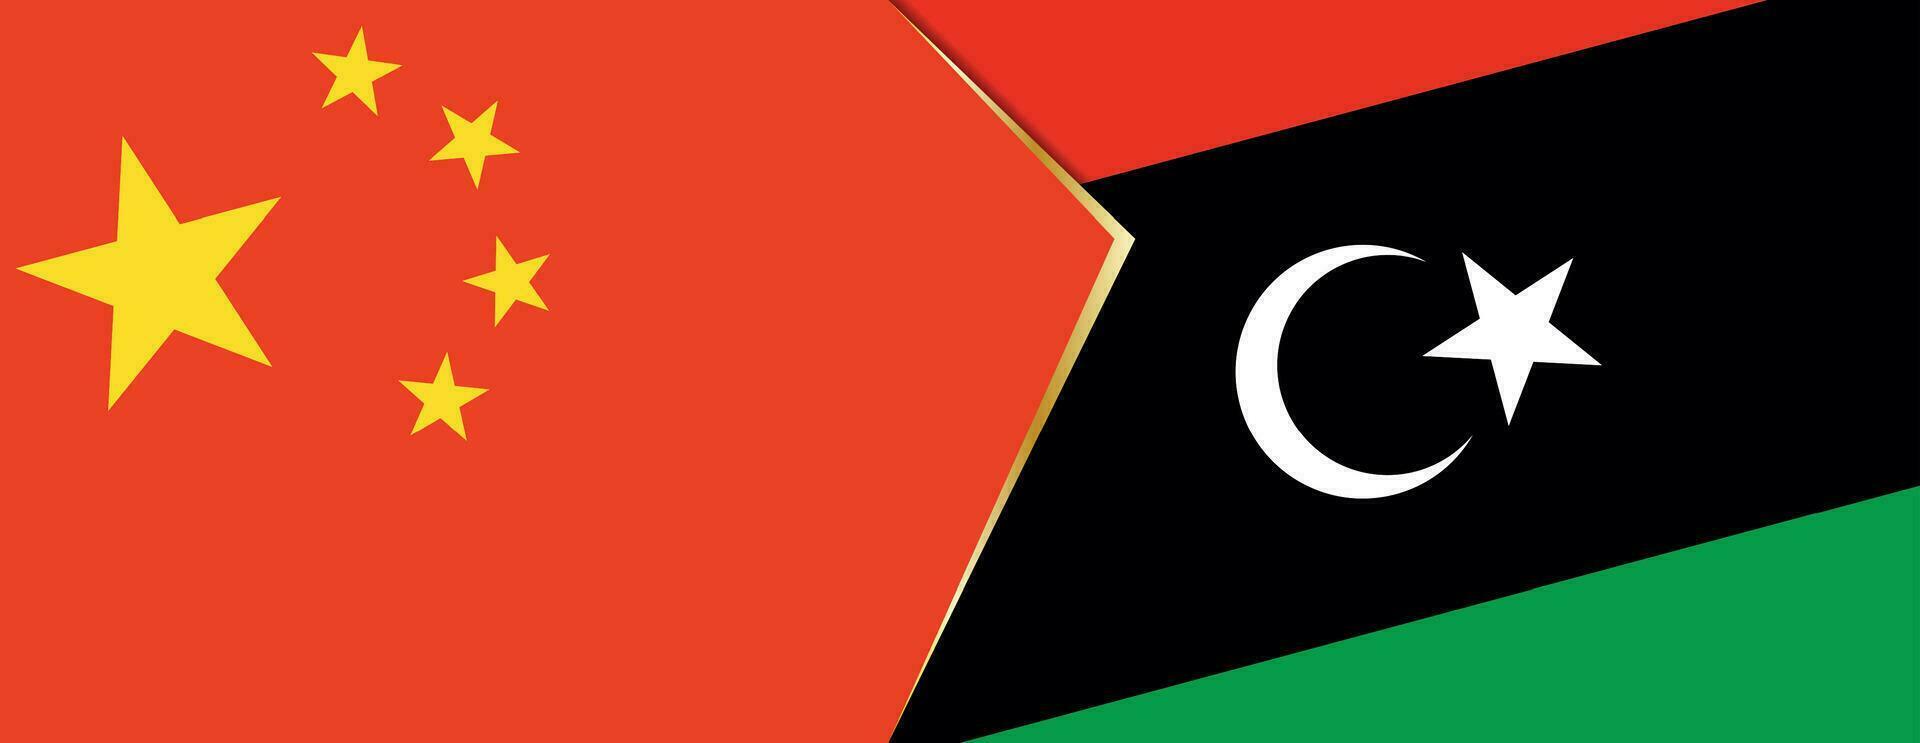 China y Libia banderas, dos vector banderas